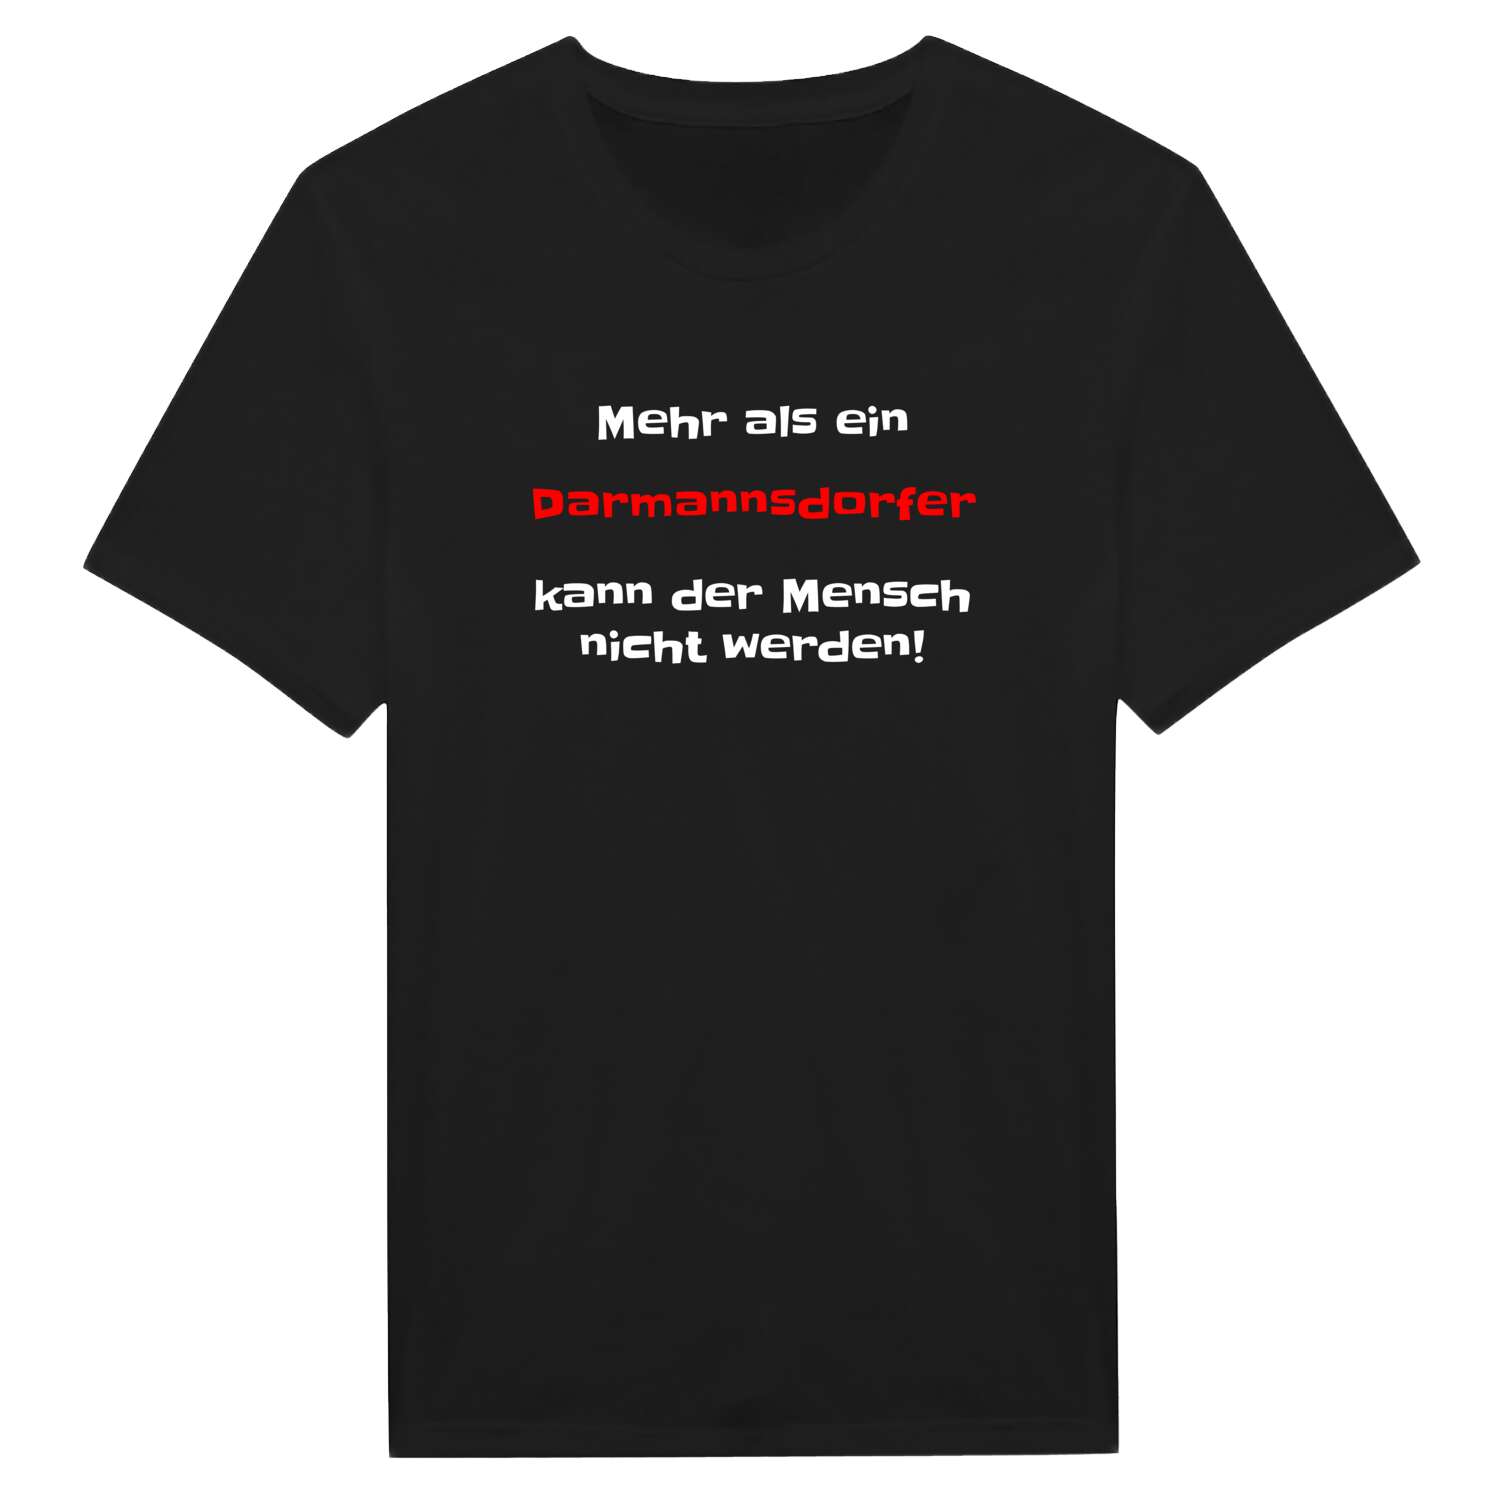 Darmannsdorf T-Shirt »Mehr als ein«